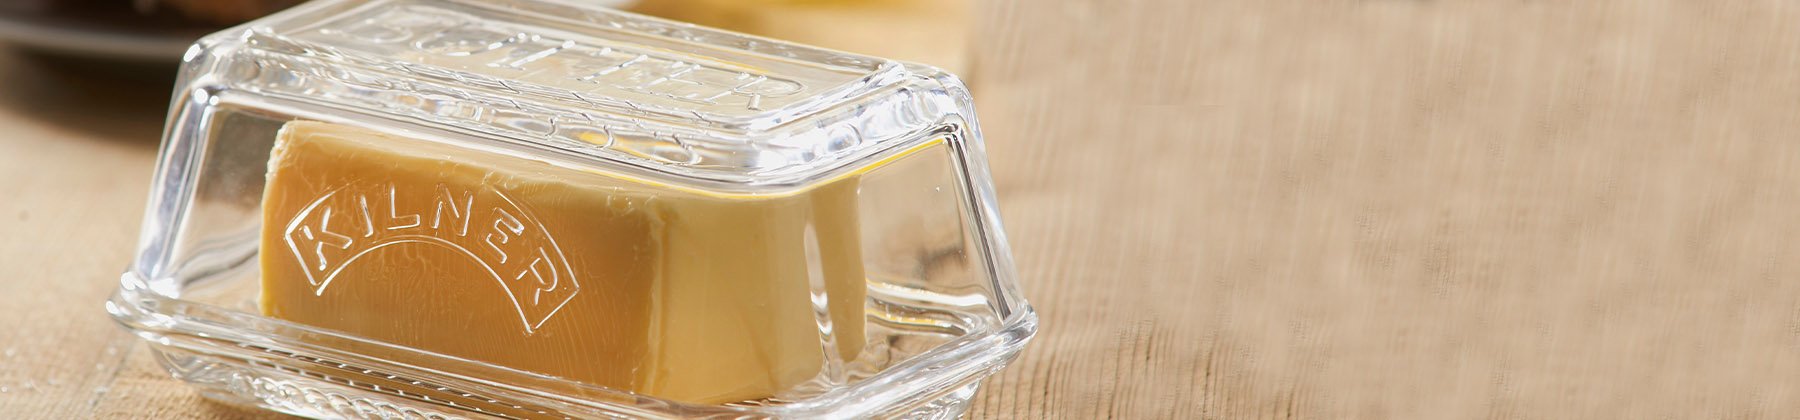 黄油盘瓦罐的照片。